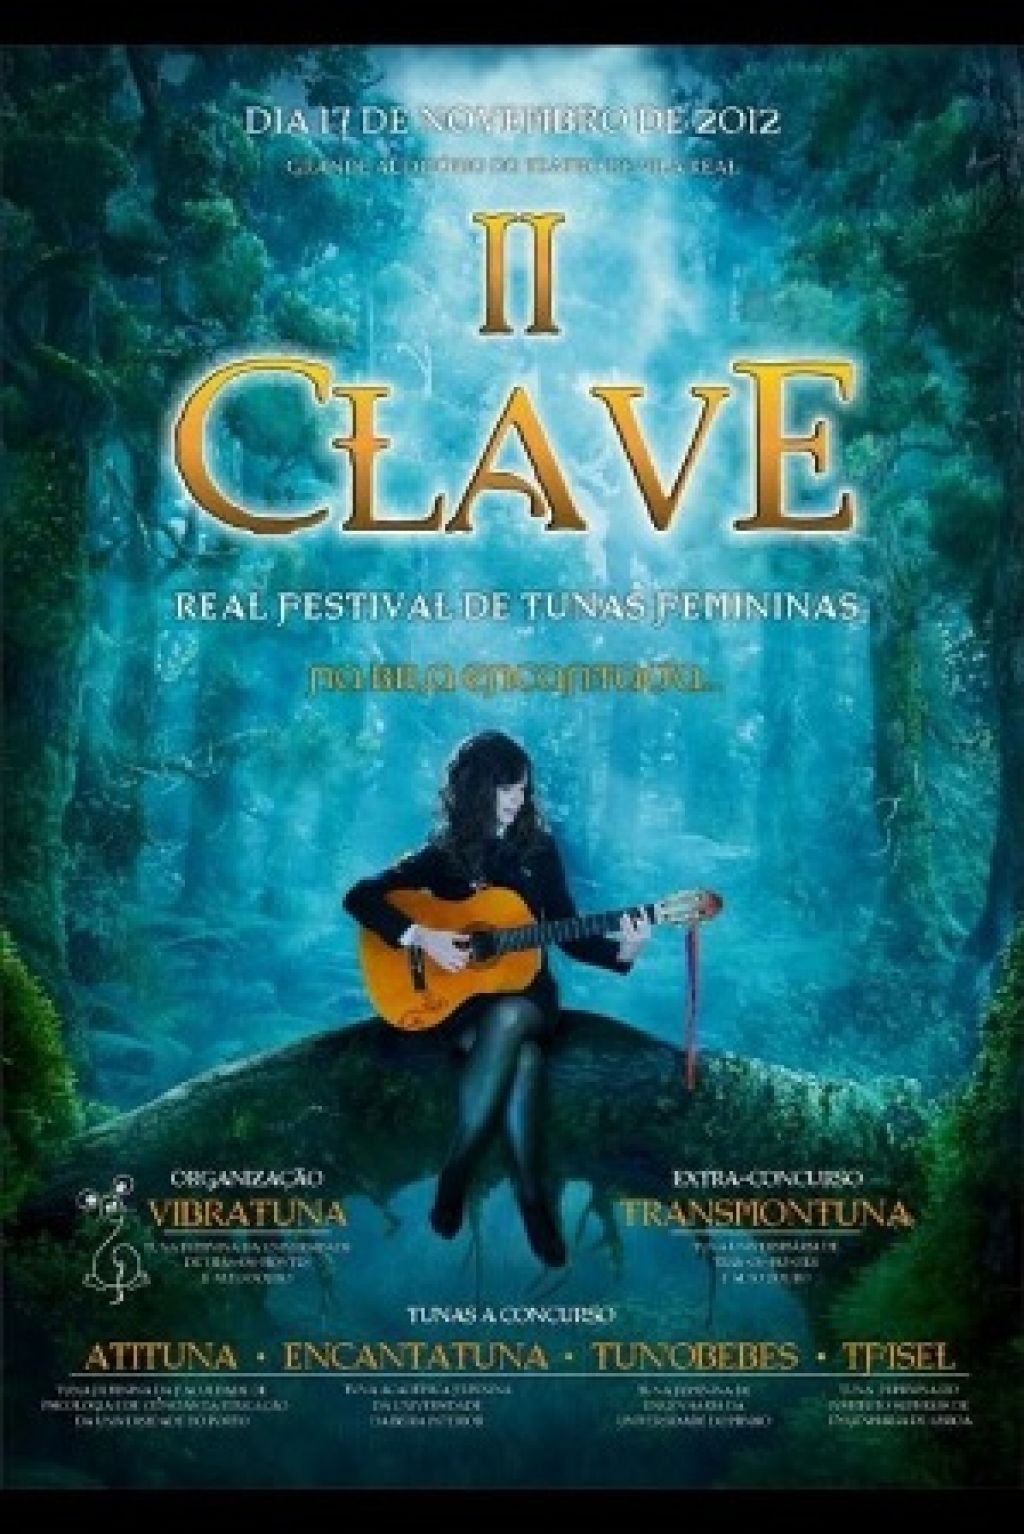 II Clave - Real Festival de Tunas Femininas